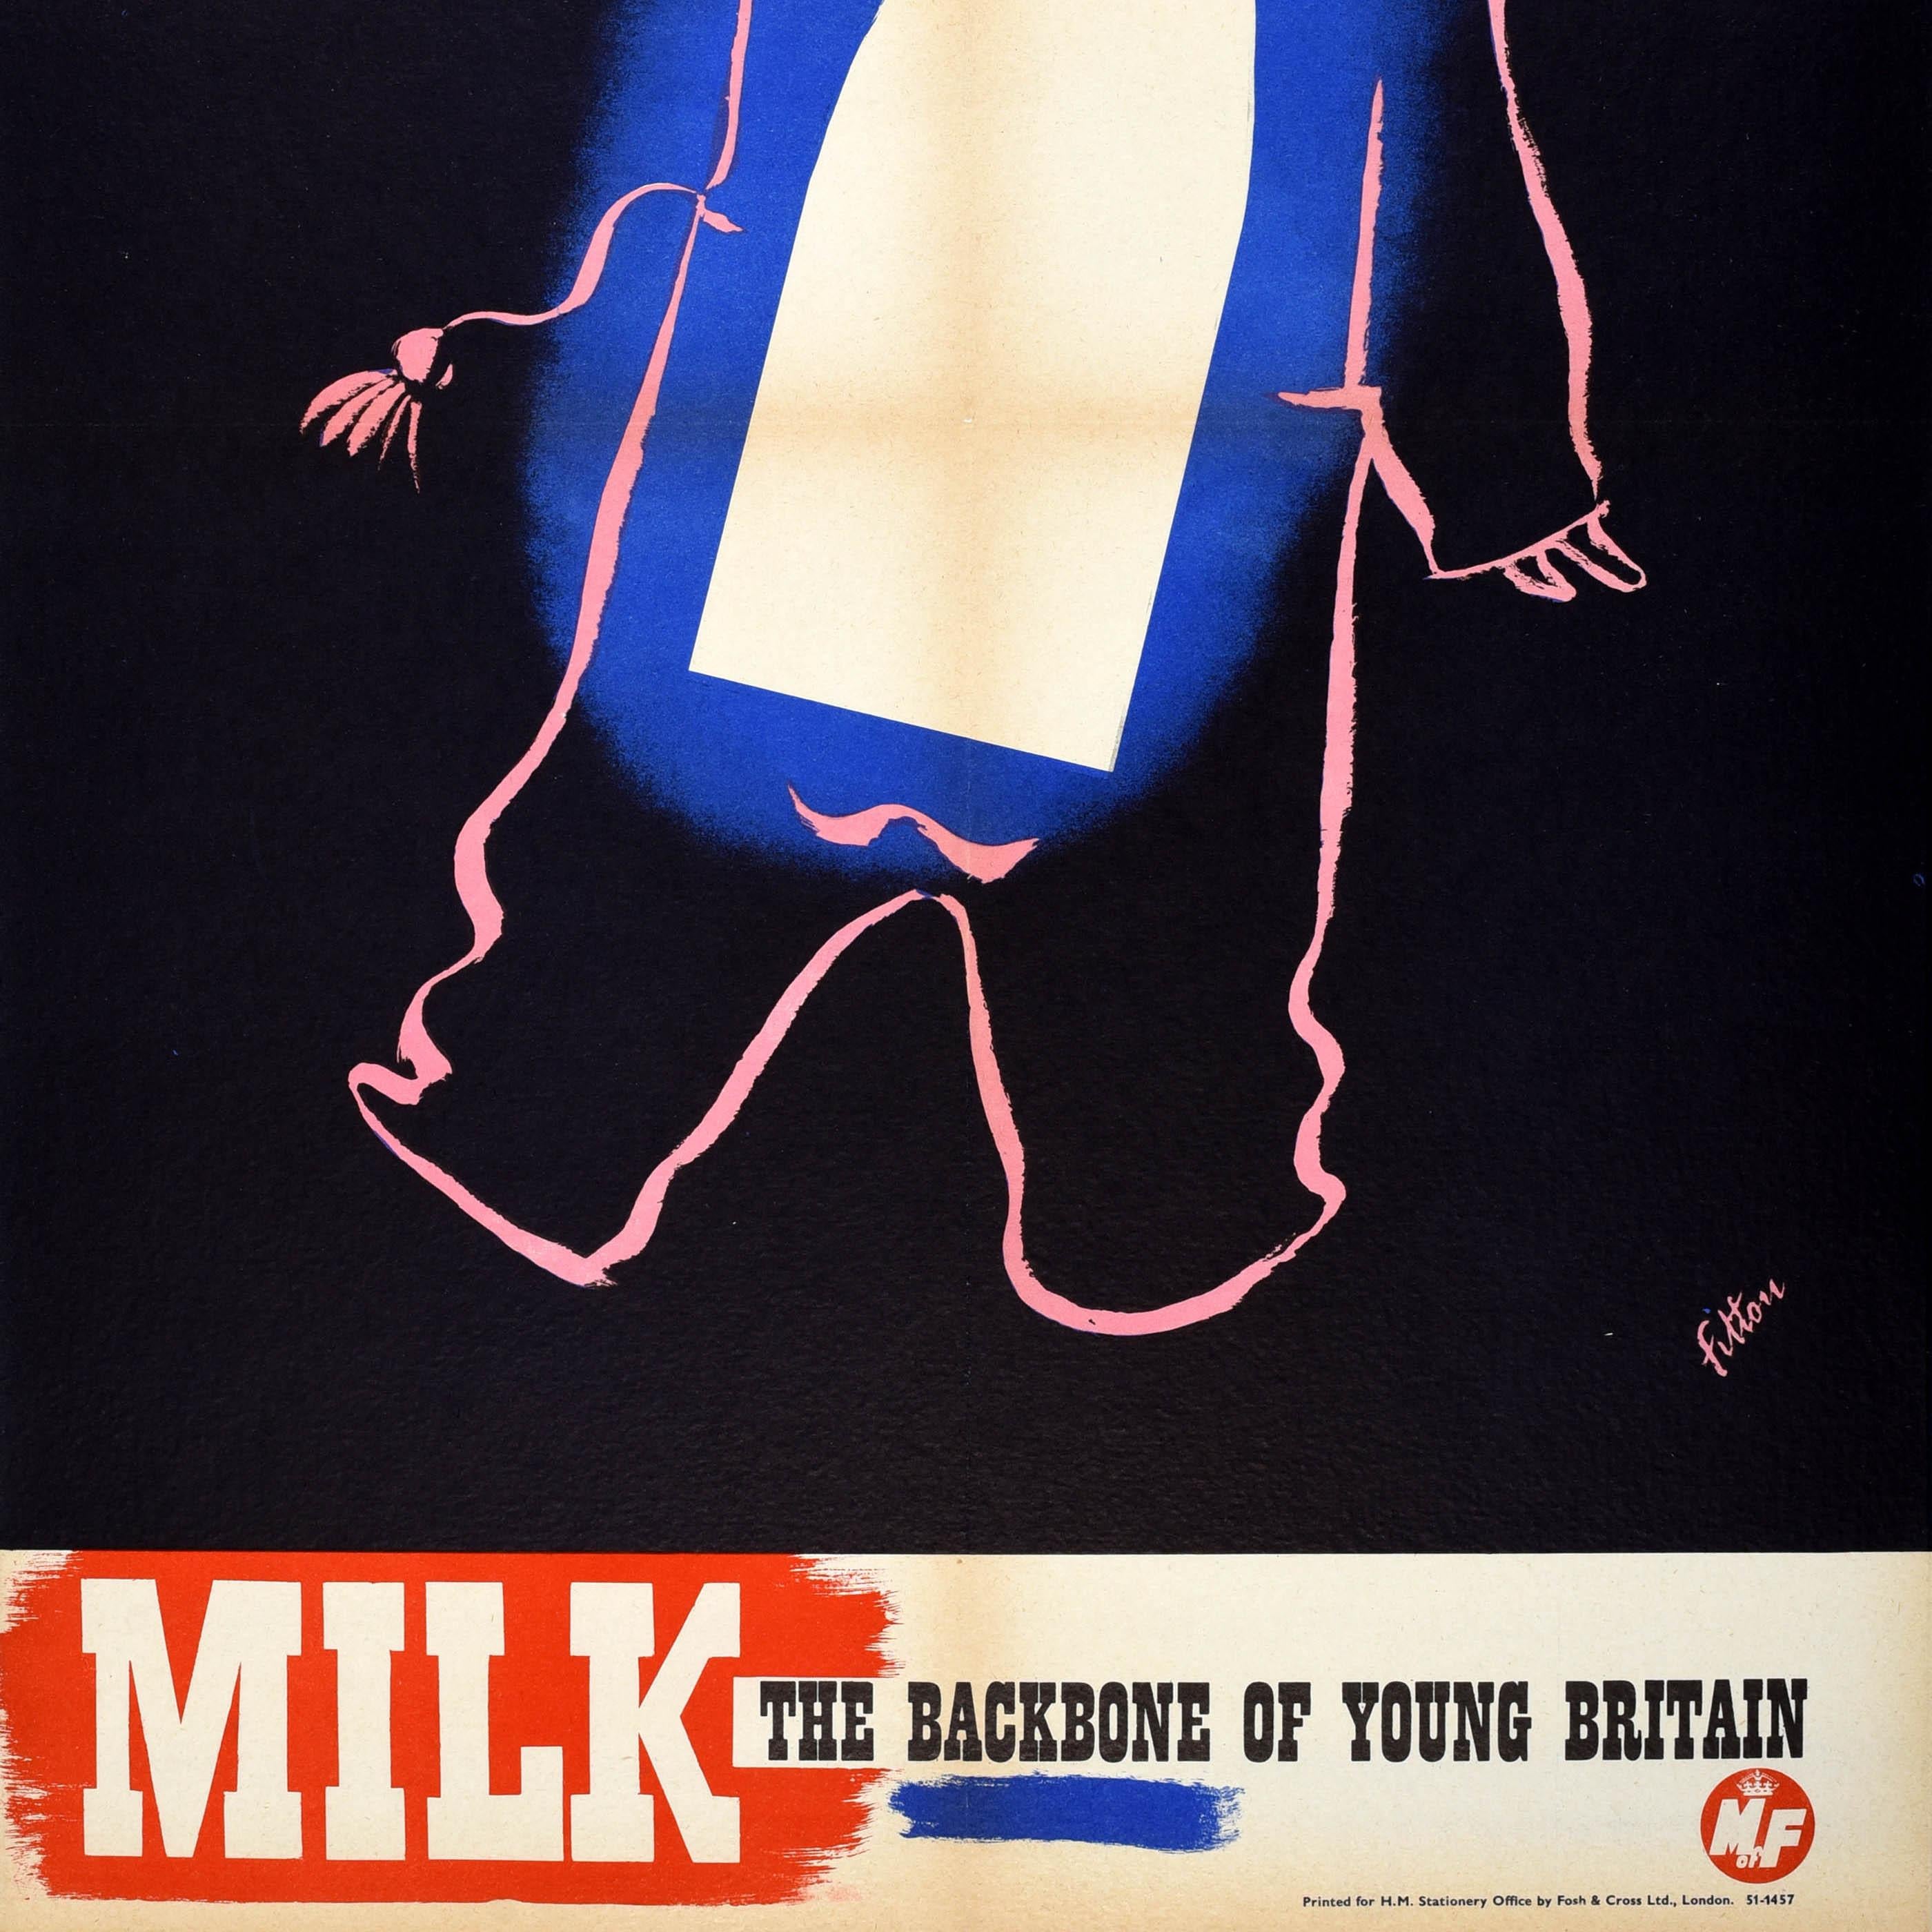 Originales Werbeplakat für Lebensmittel und Getränke, herausgegeben vom Ministerium für Ernährung - Milk The Backbone of Young Britain - mit einem großartigen Design von James Fitton (1899-1982), das den rosa Umriss eines Jungen zeigt, der eine